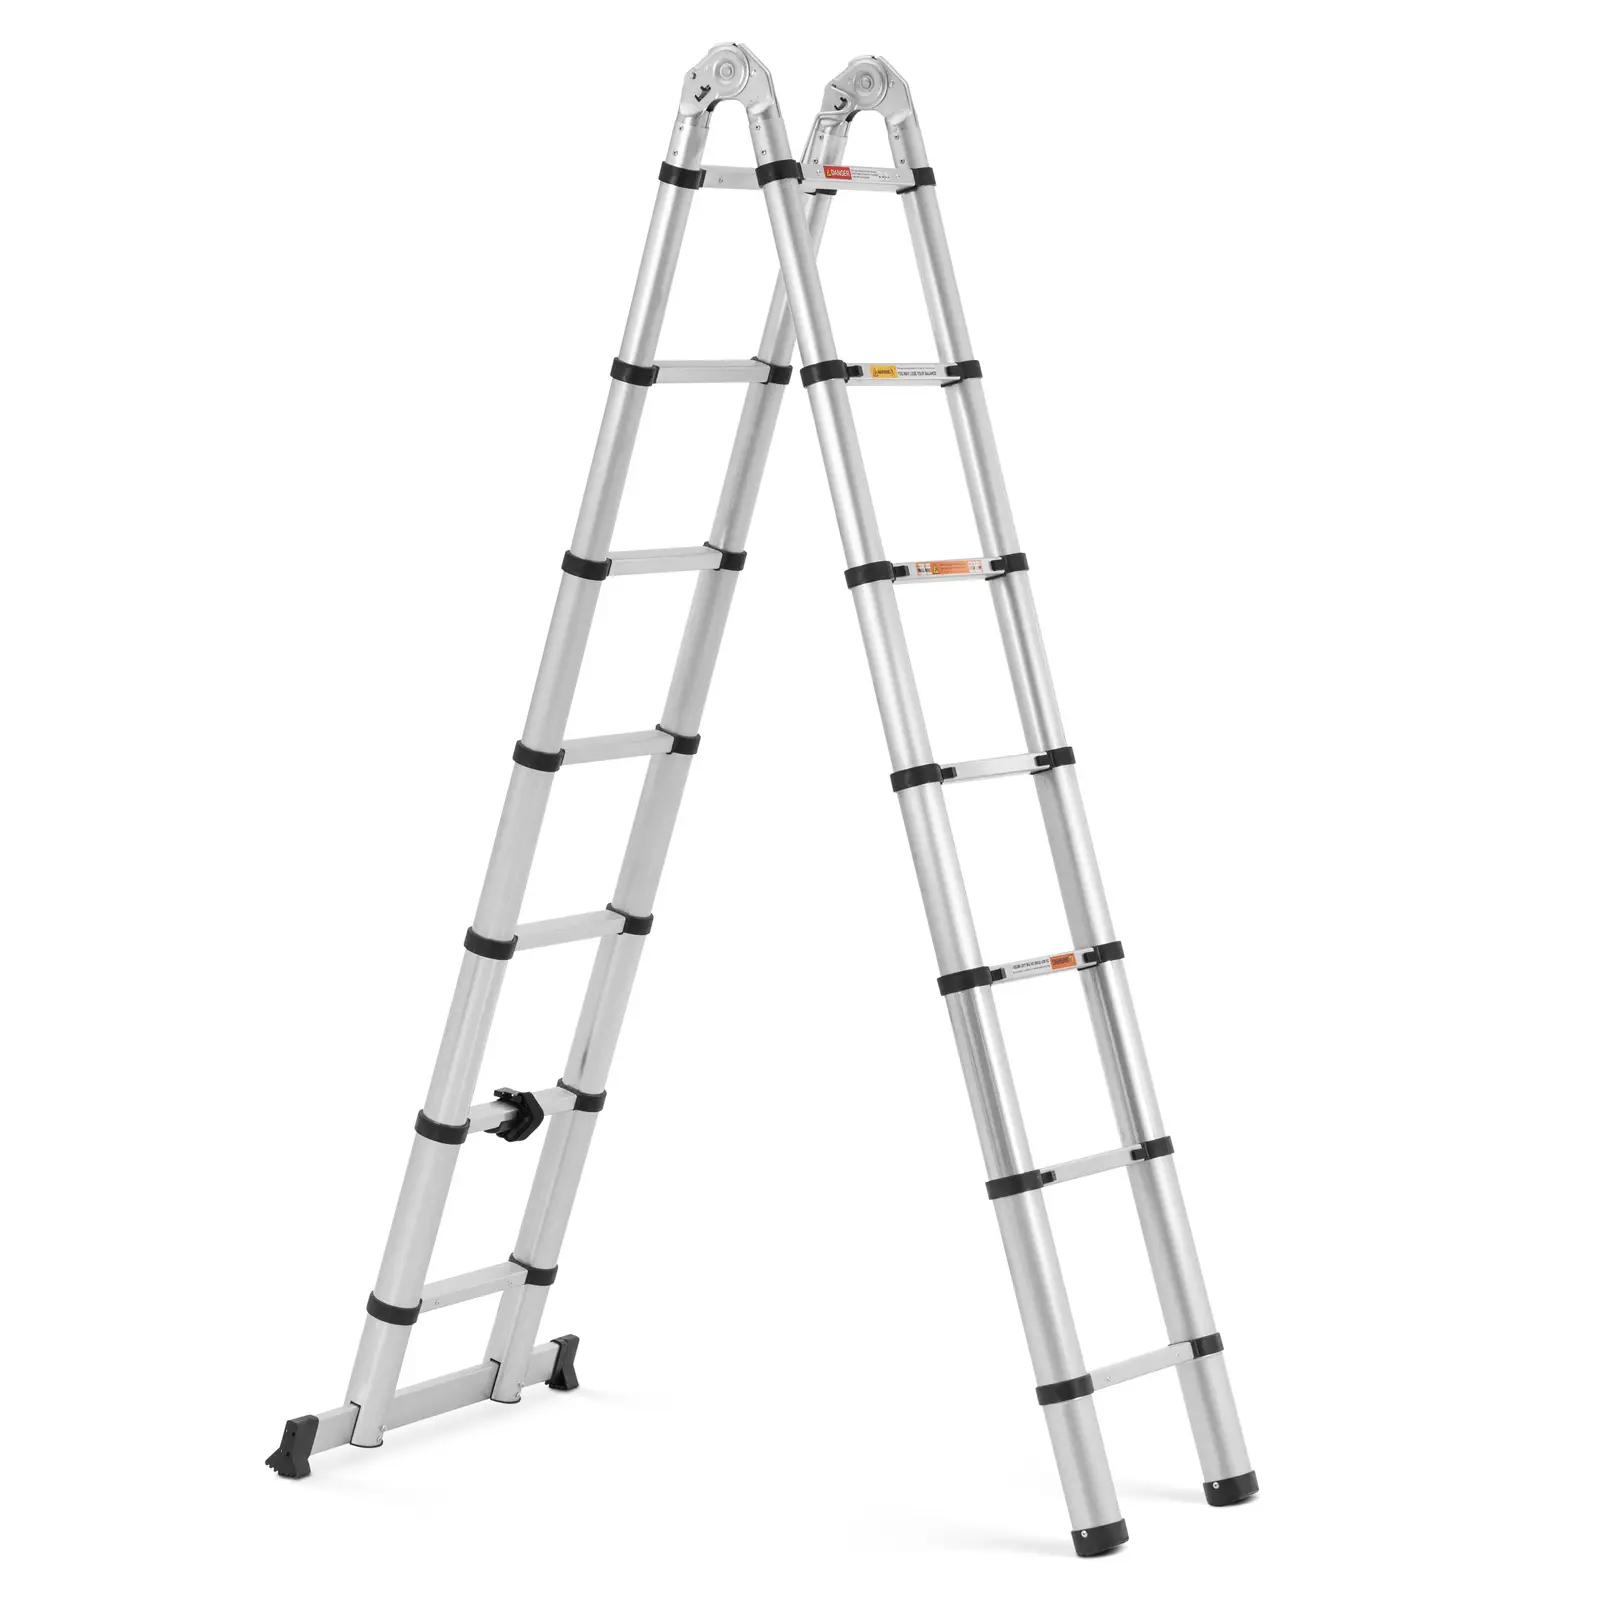 Escada telescópica rebatível - 14 degraus - alumínio - altura: 0,88 - 2,13/4,40 m